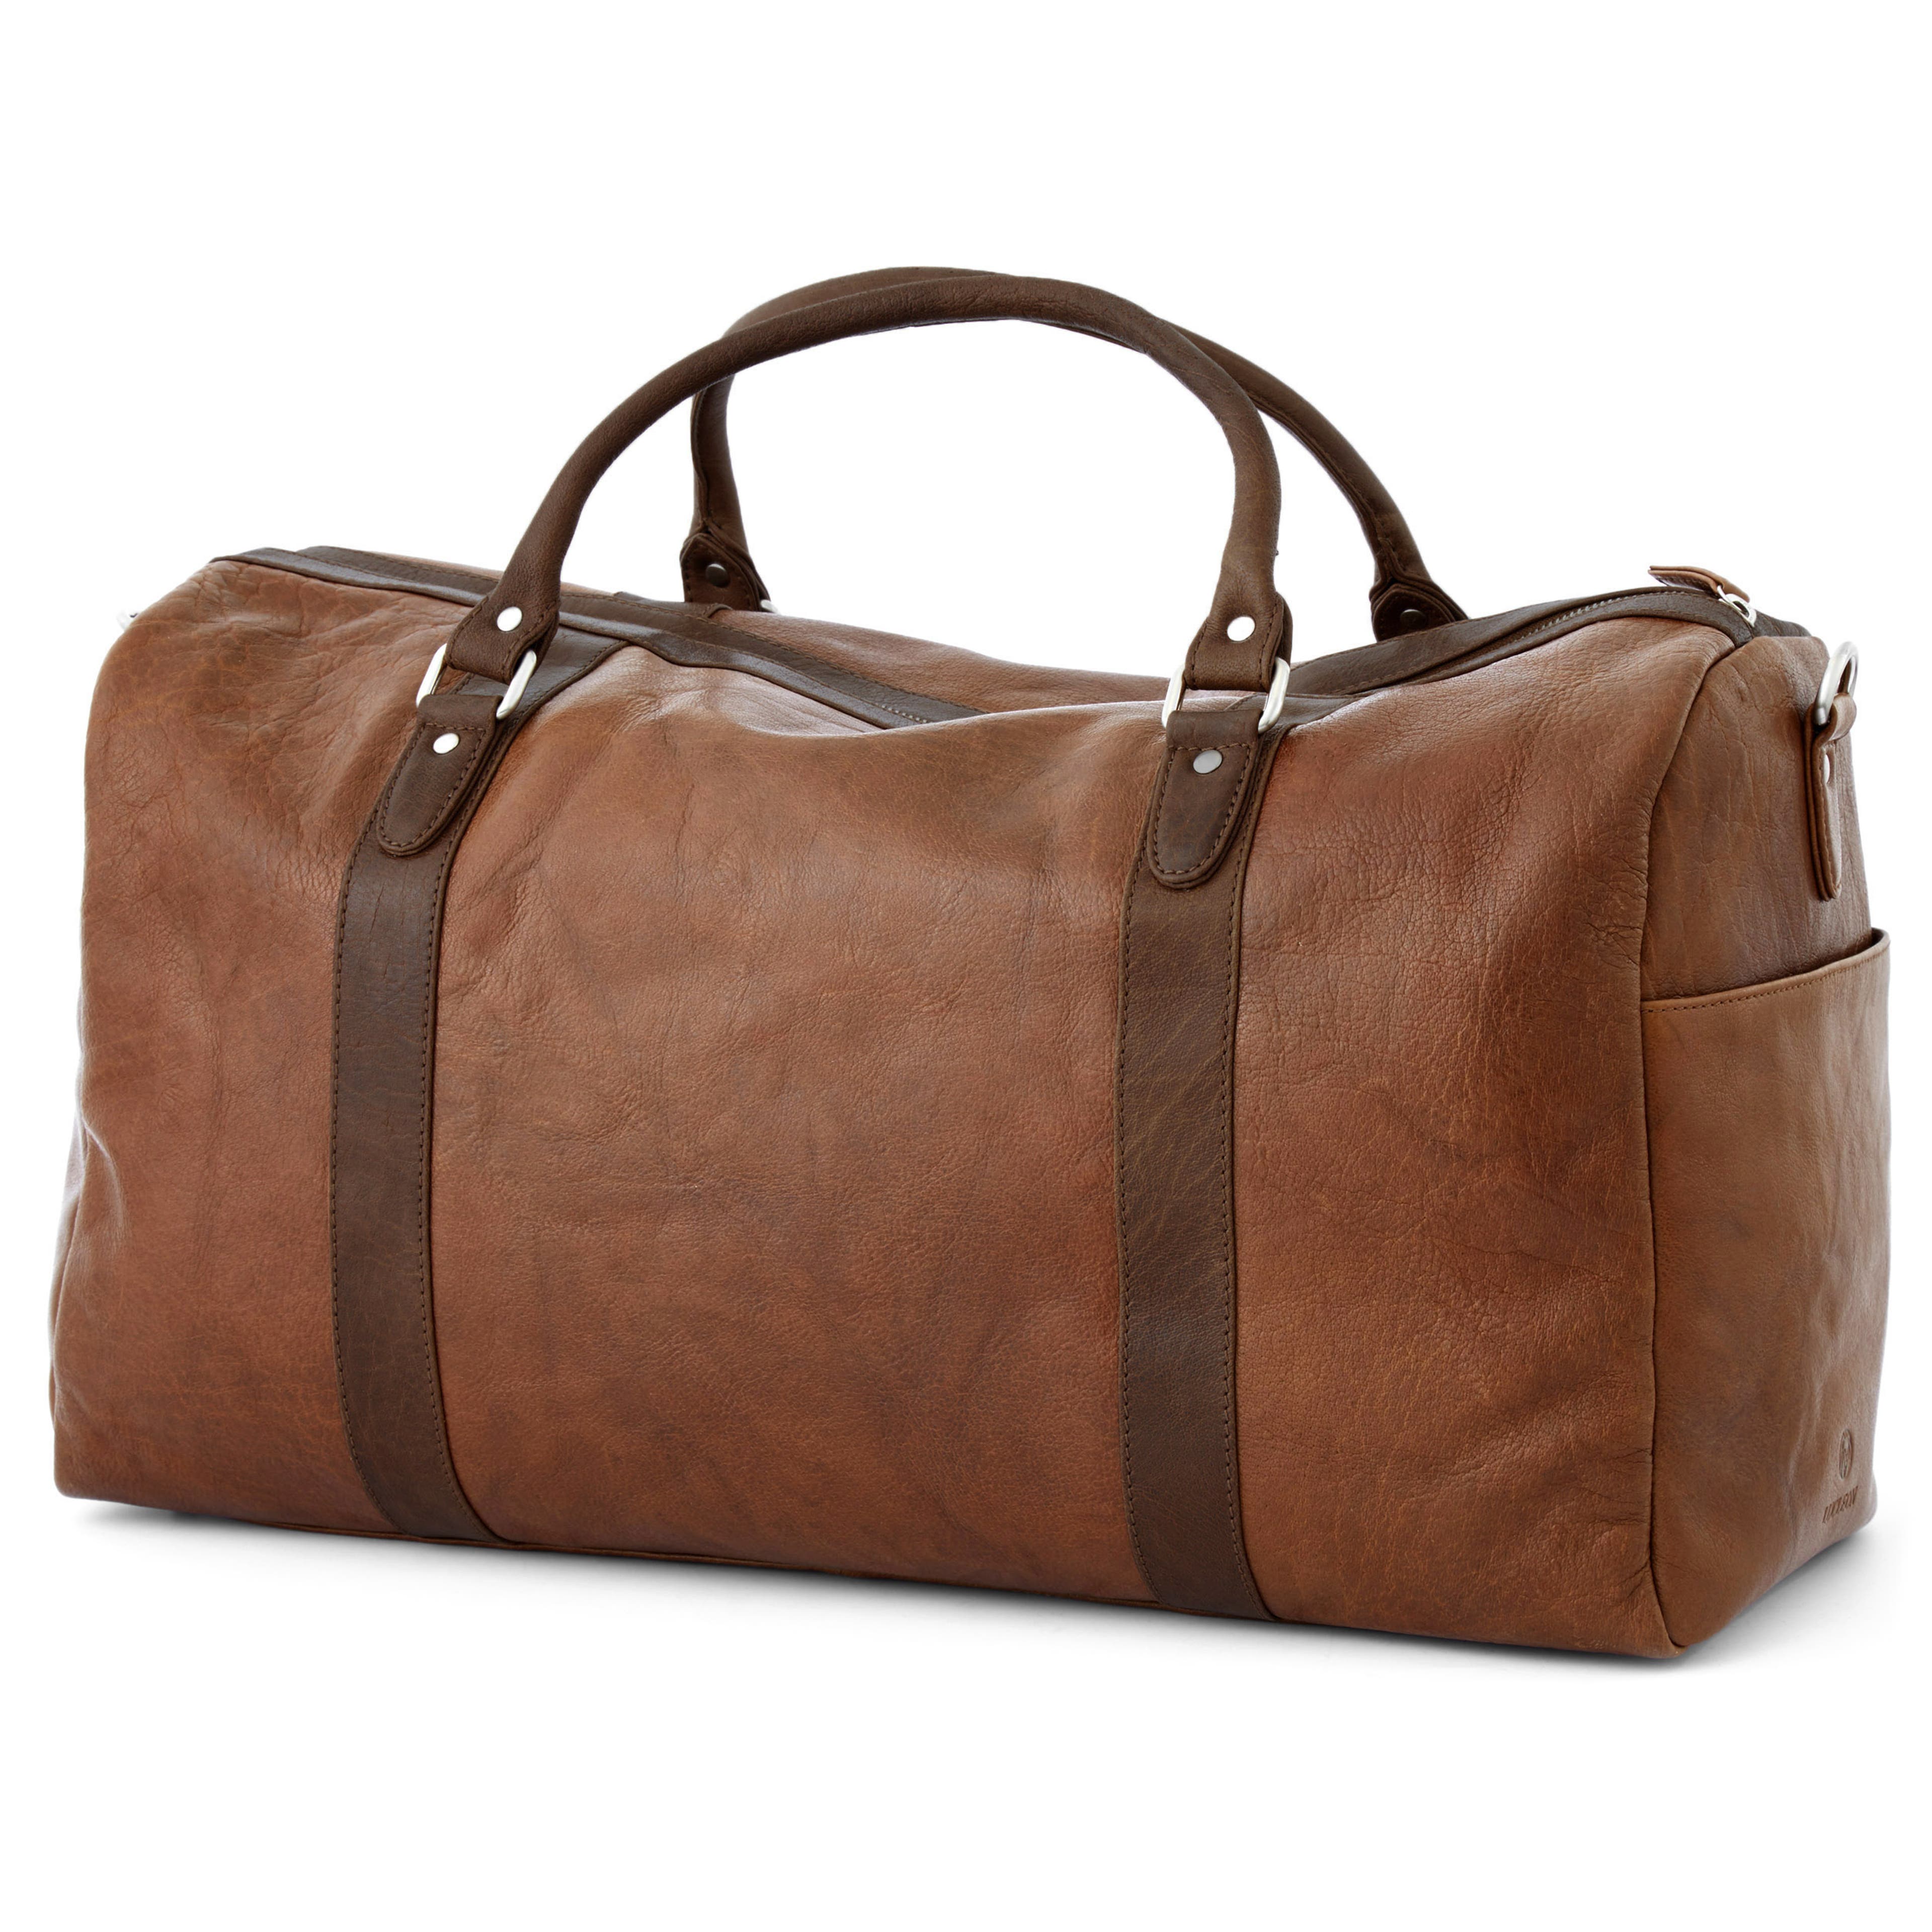 Tan & Brown California Duffel Bag